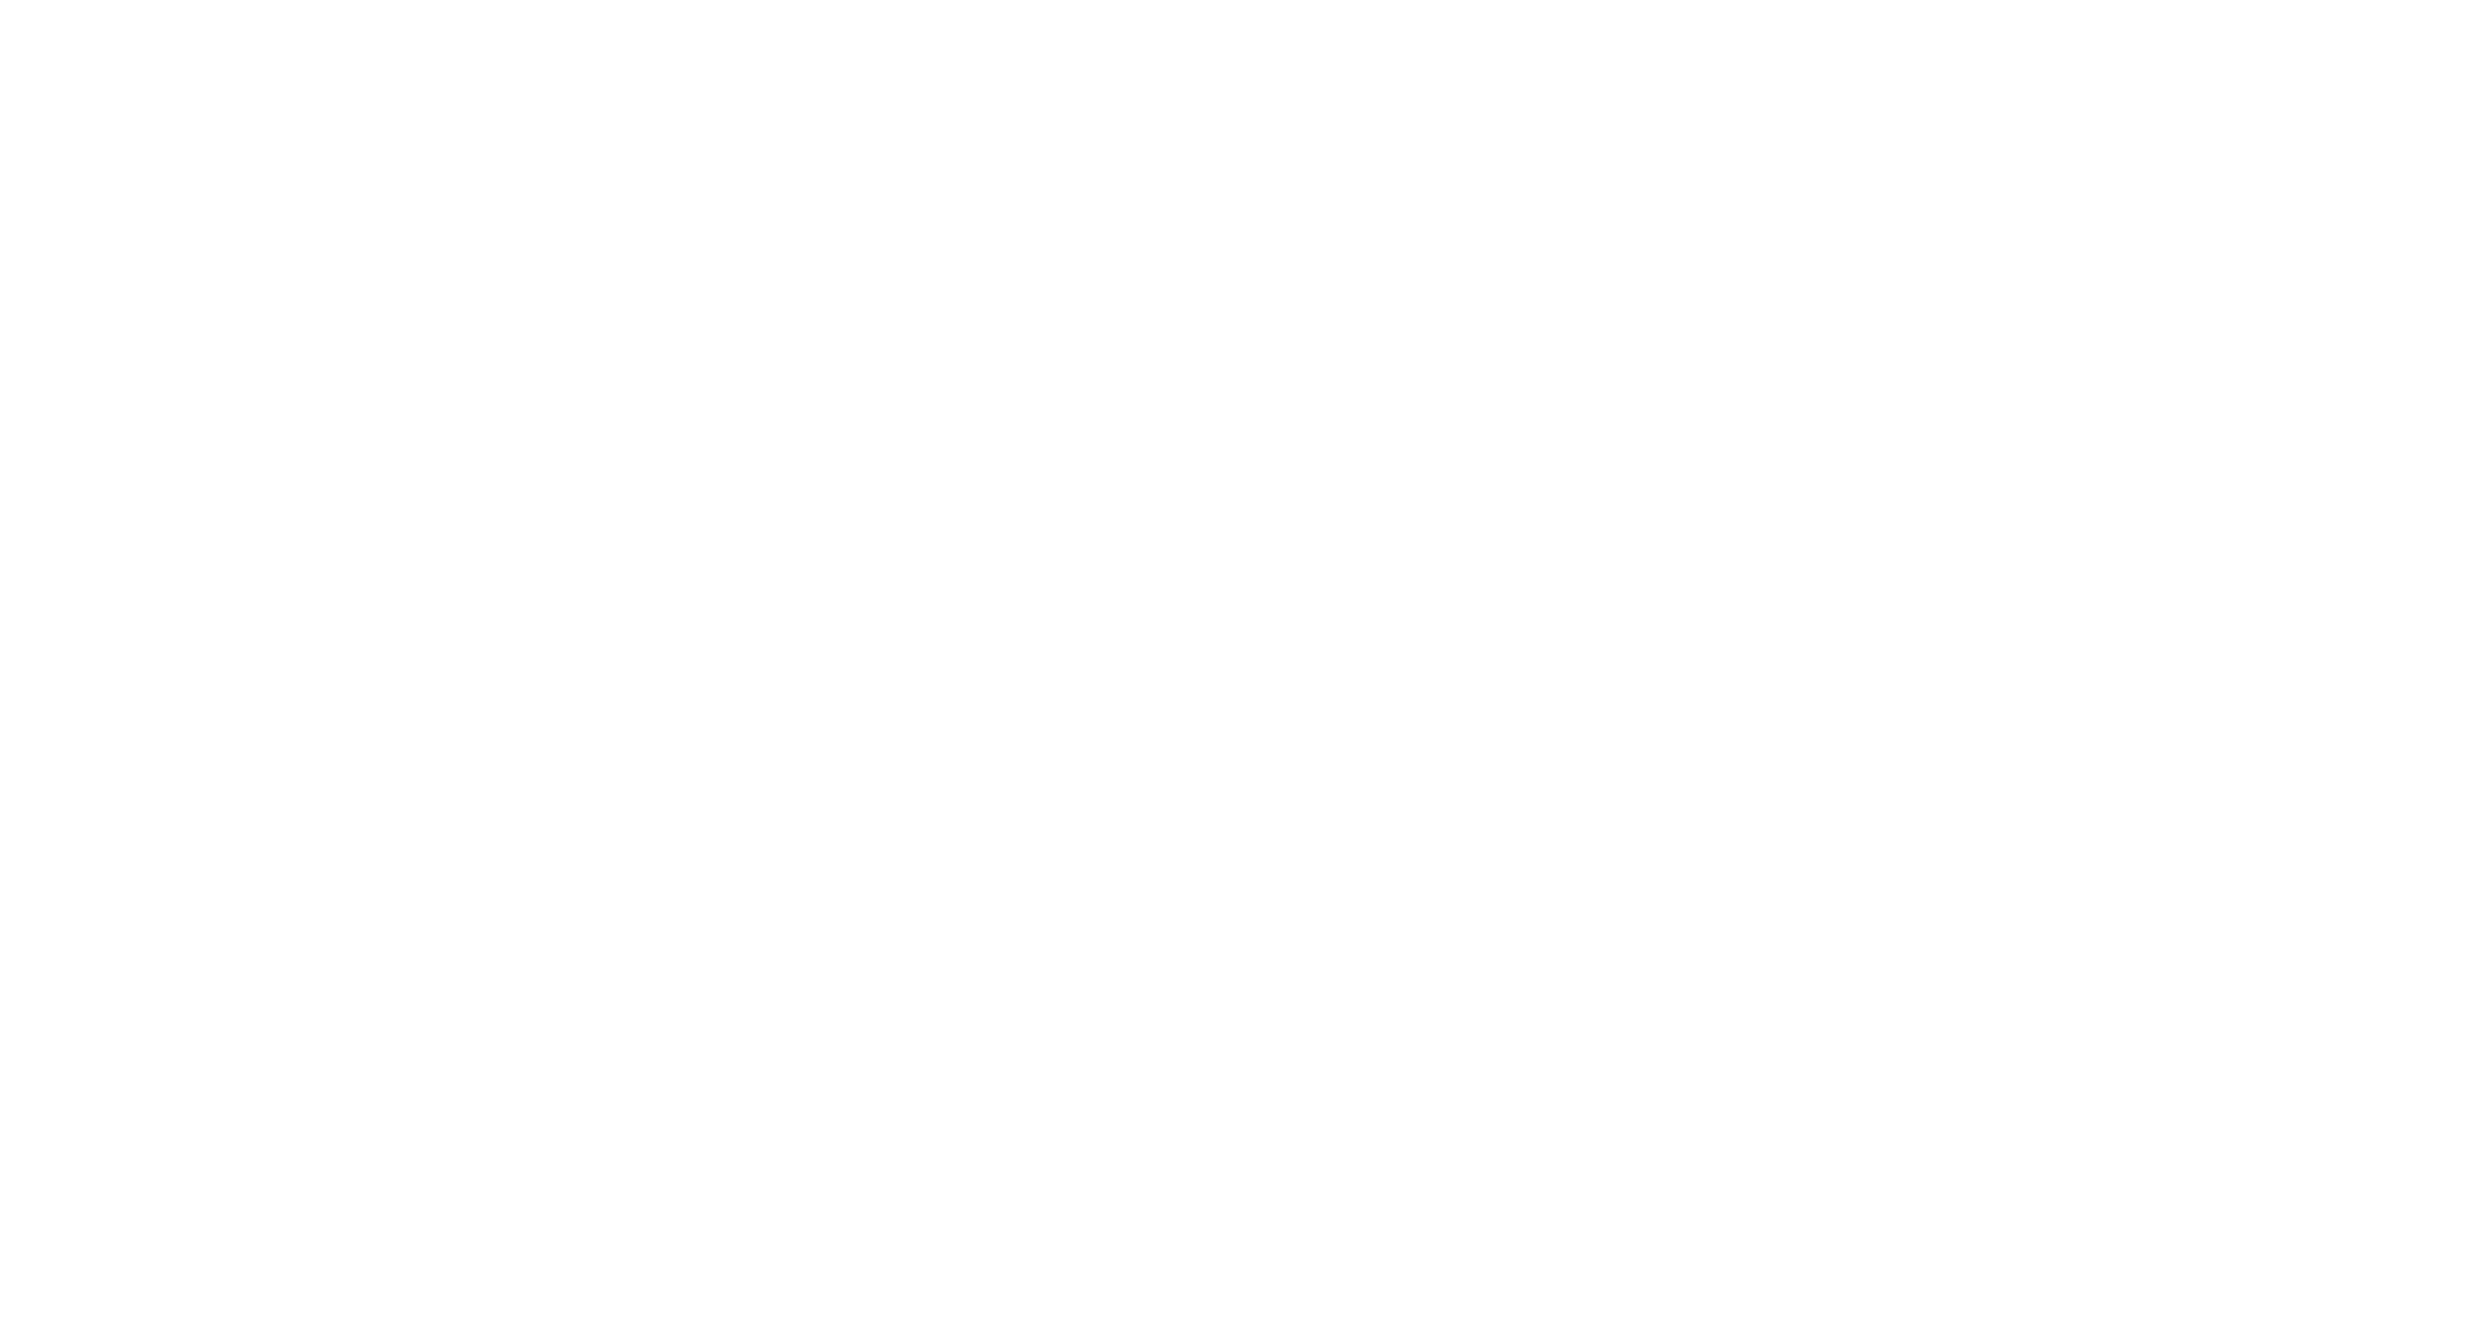 Türkiye Cumhuriyeti Sanayi ve Teknoloji Bakanlığı logosu